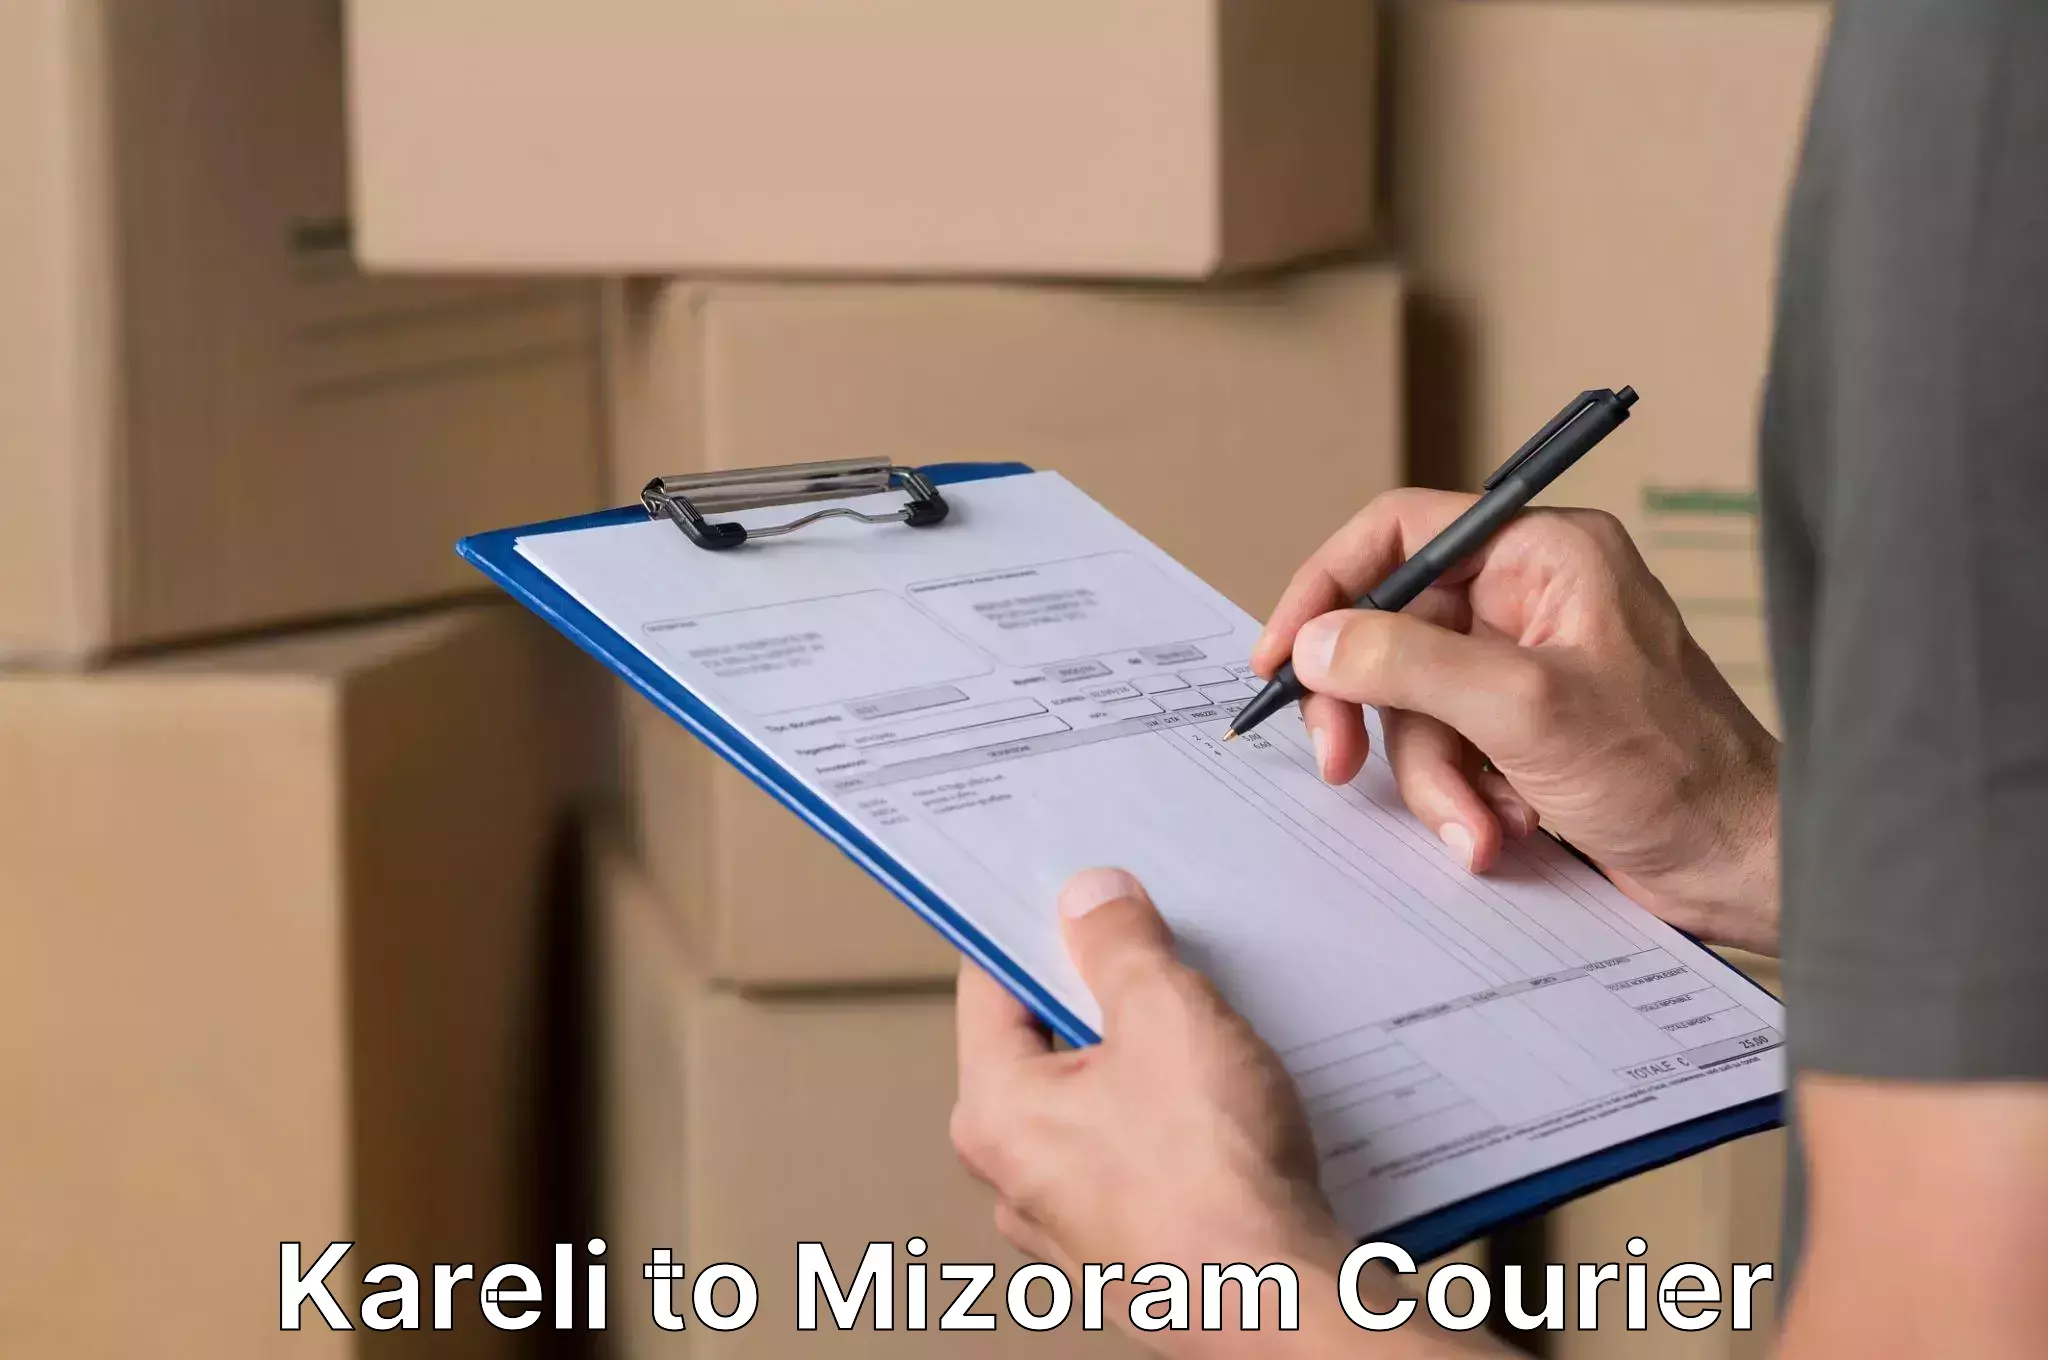 Furniture delivery service in Kareli to Mizoram